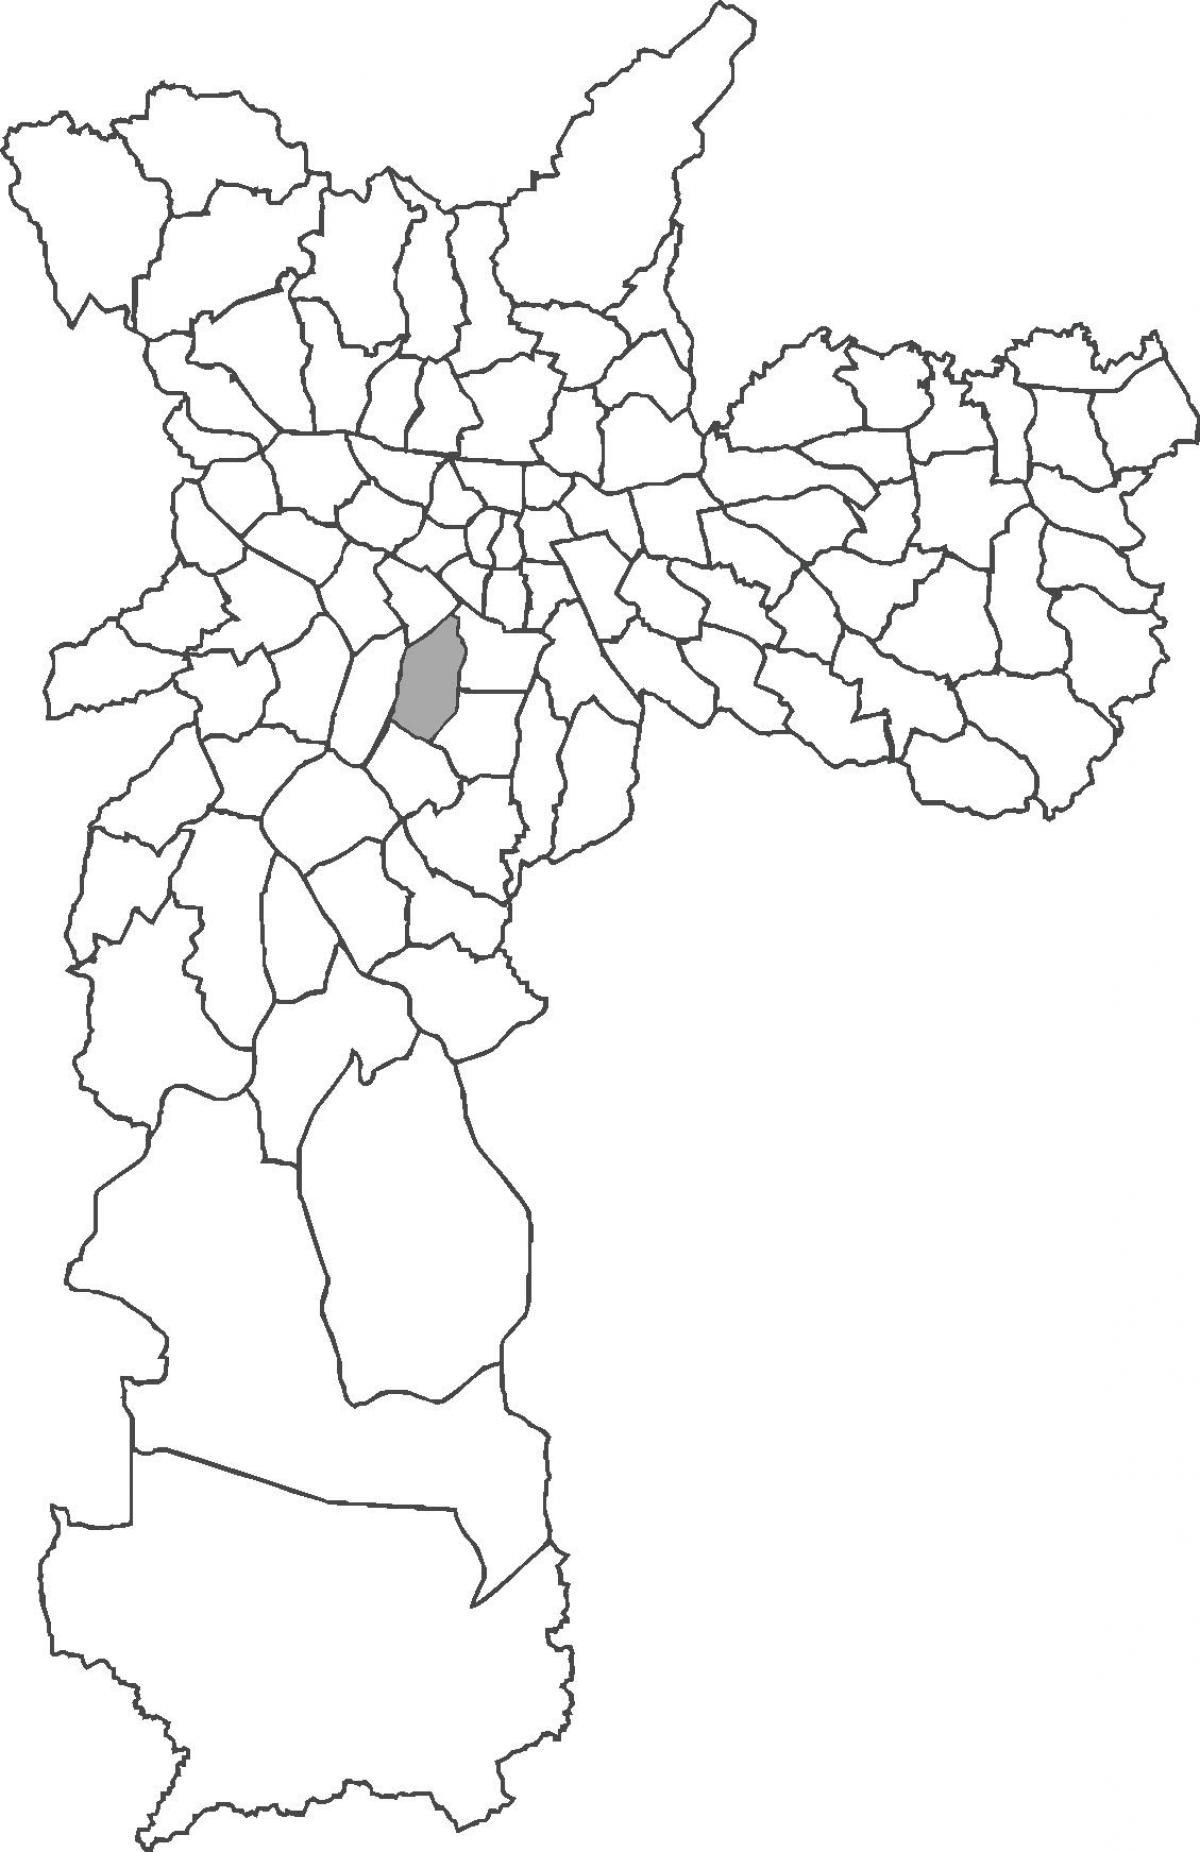 Peta Moema daerah